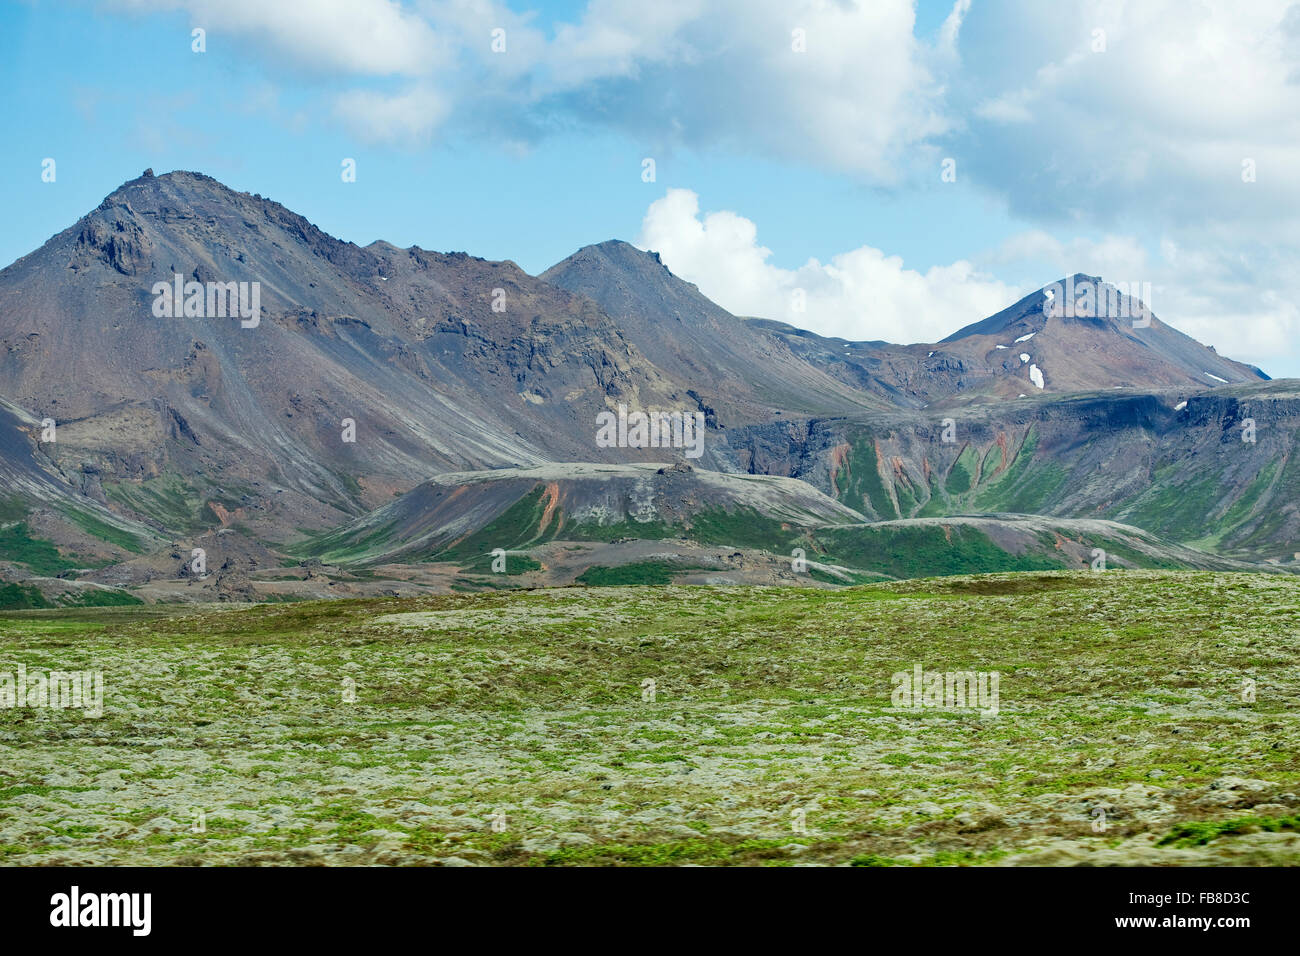 Iceland, Mountainous landscape Stock Photo